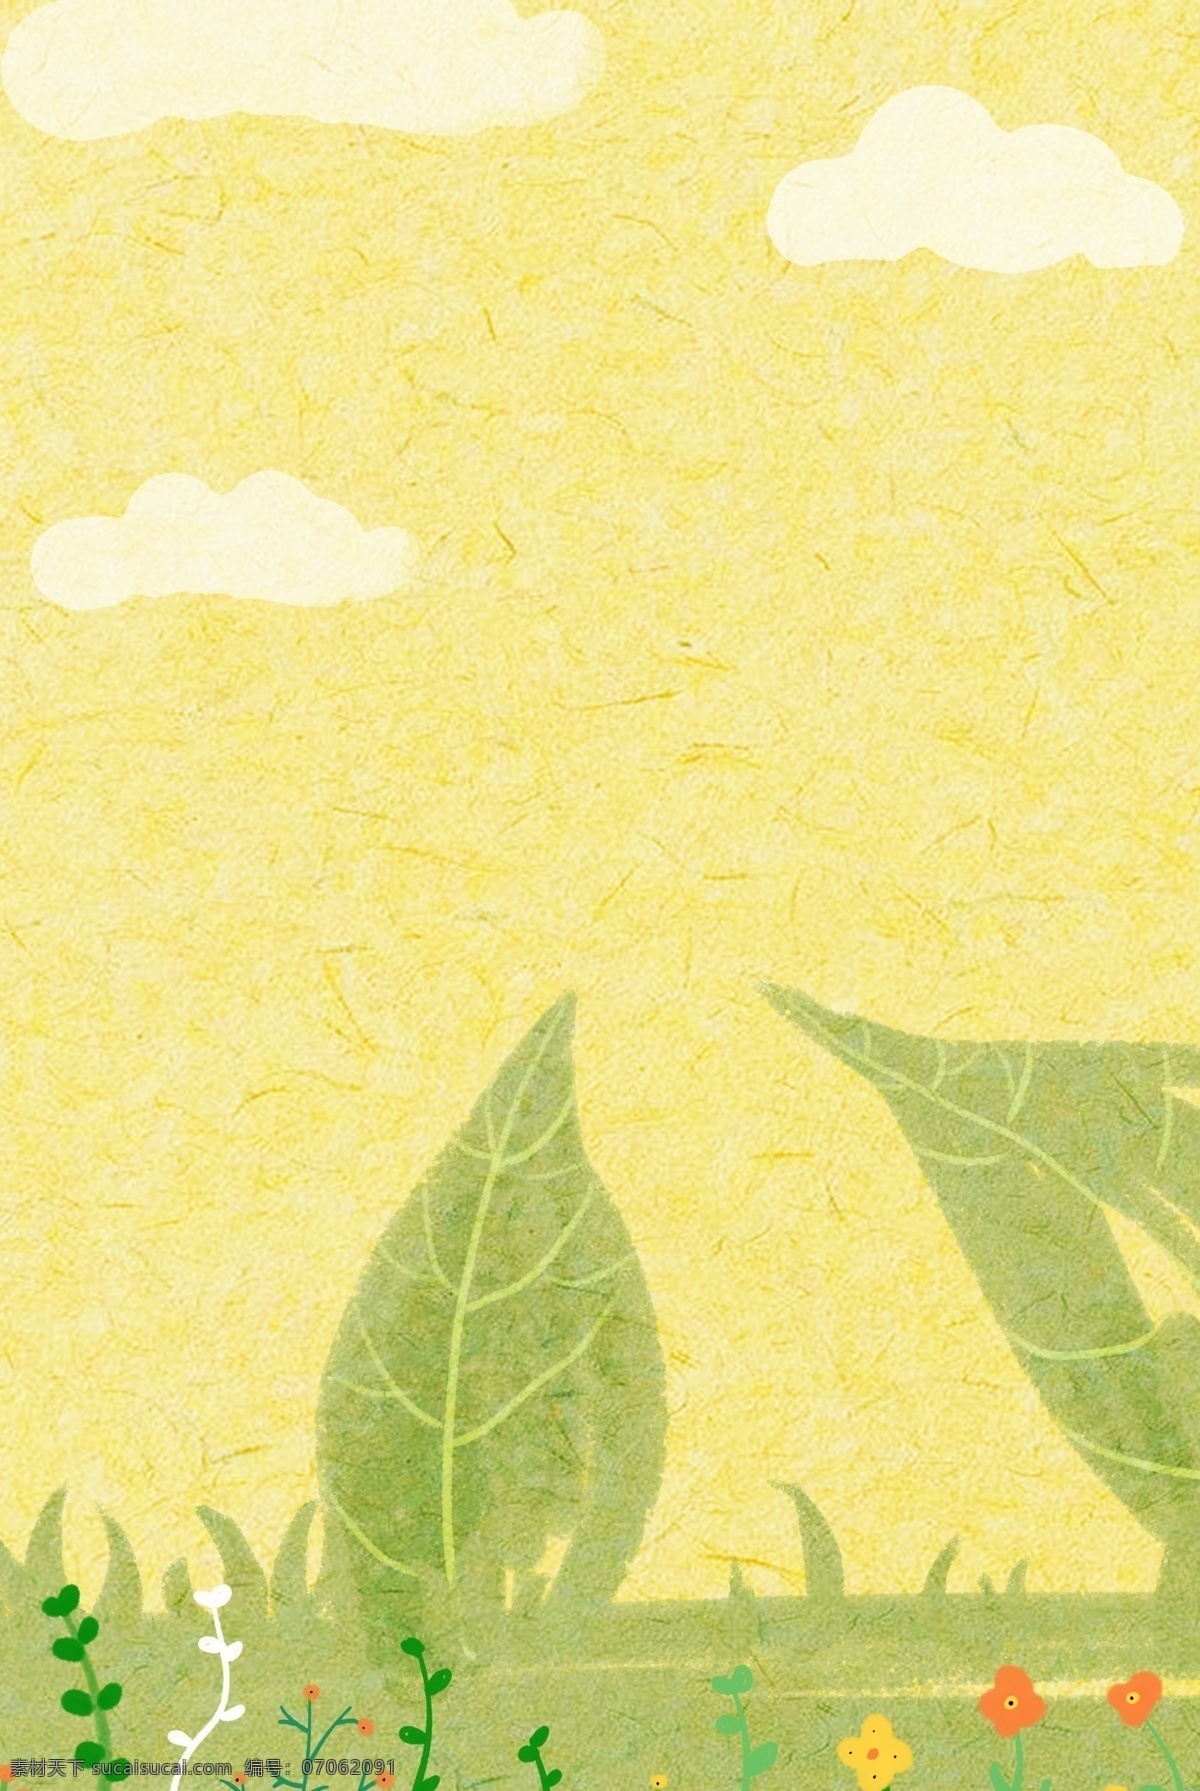 惊蛰 农历 节气 分层 banner 二十四节气 春天 手绘 农历节气 草地 花朵 树叶 创意合成